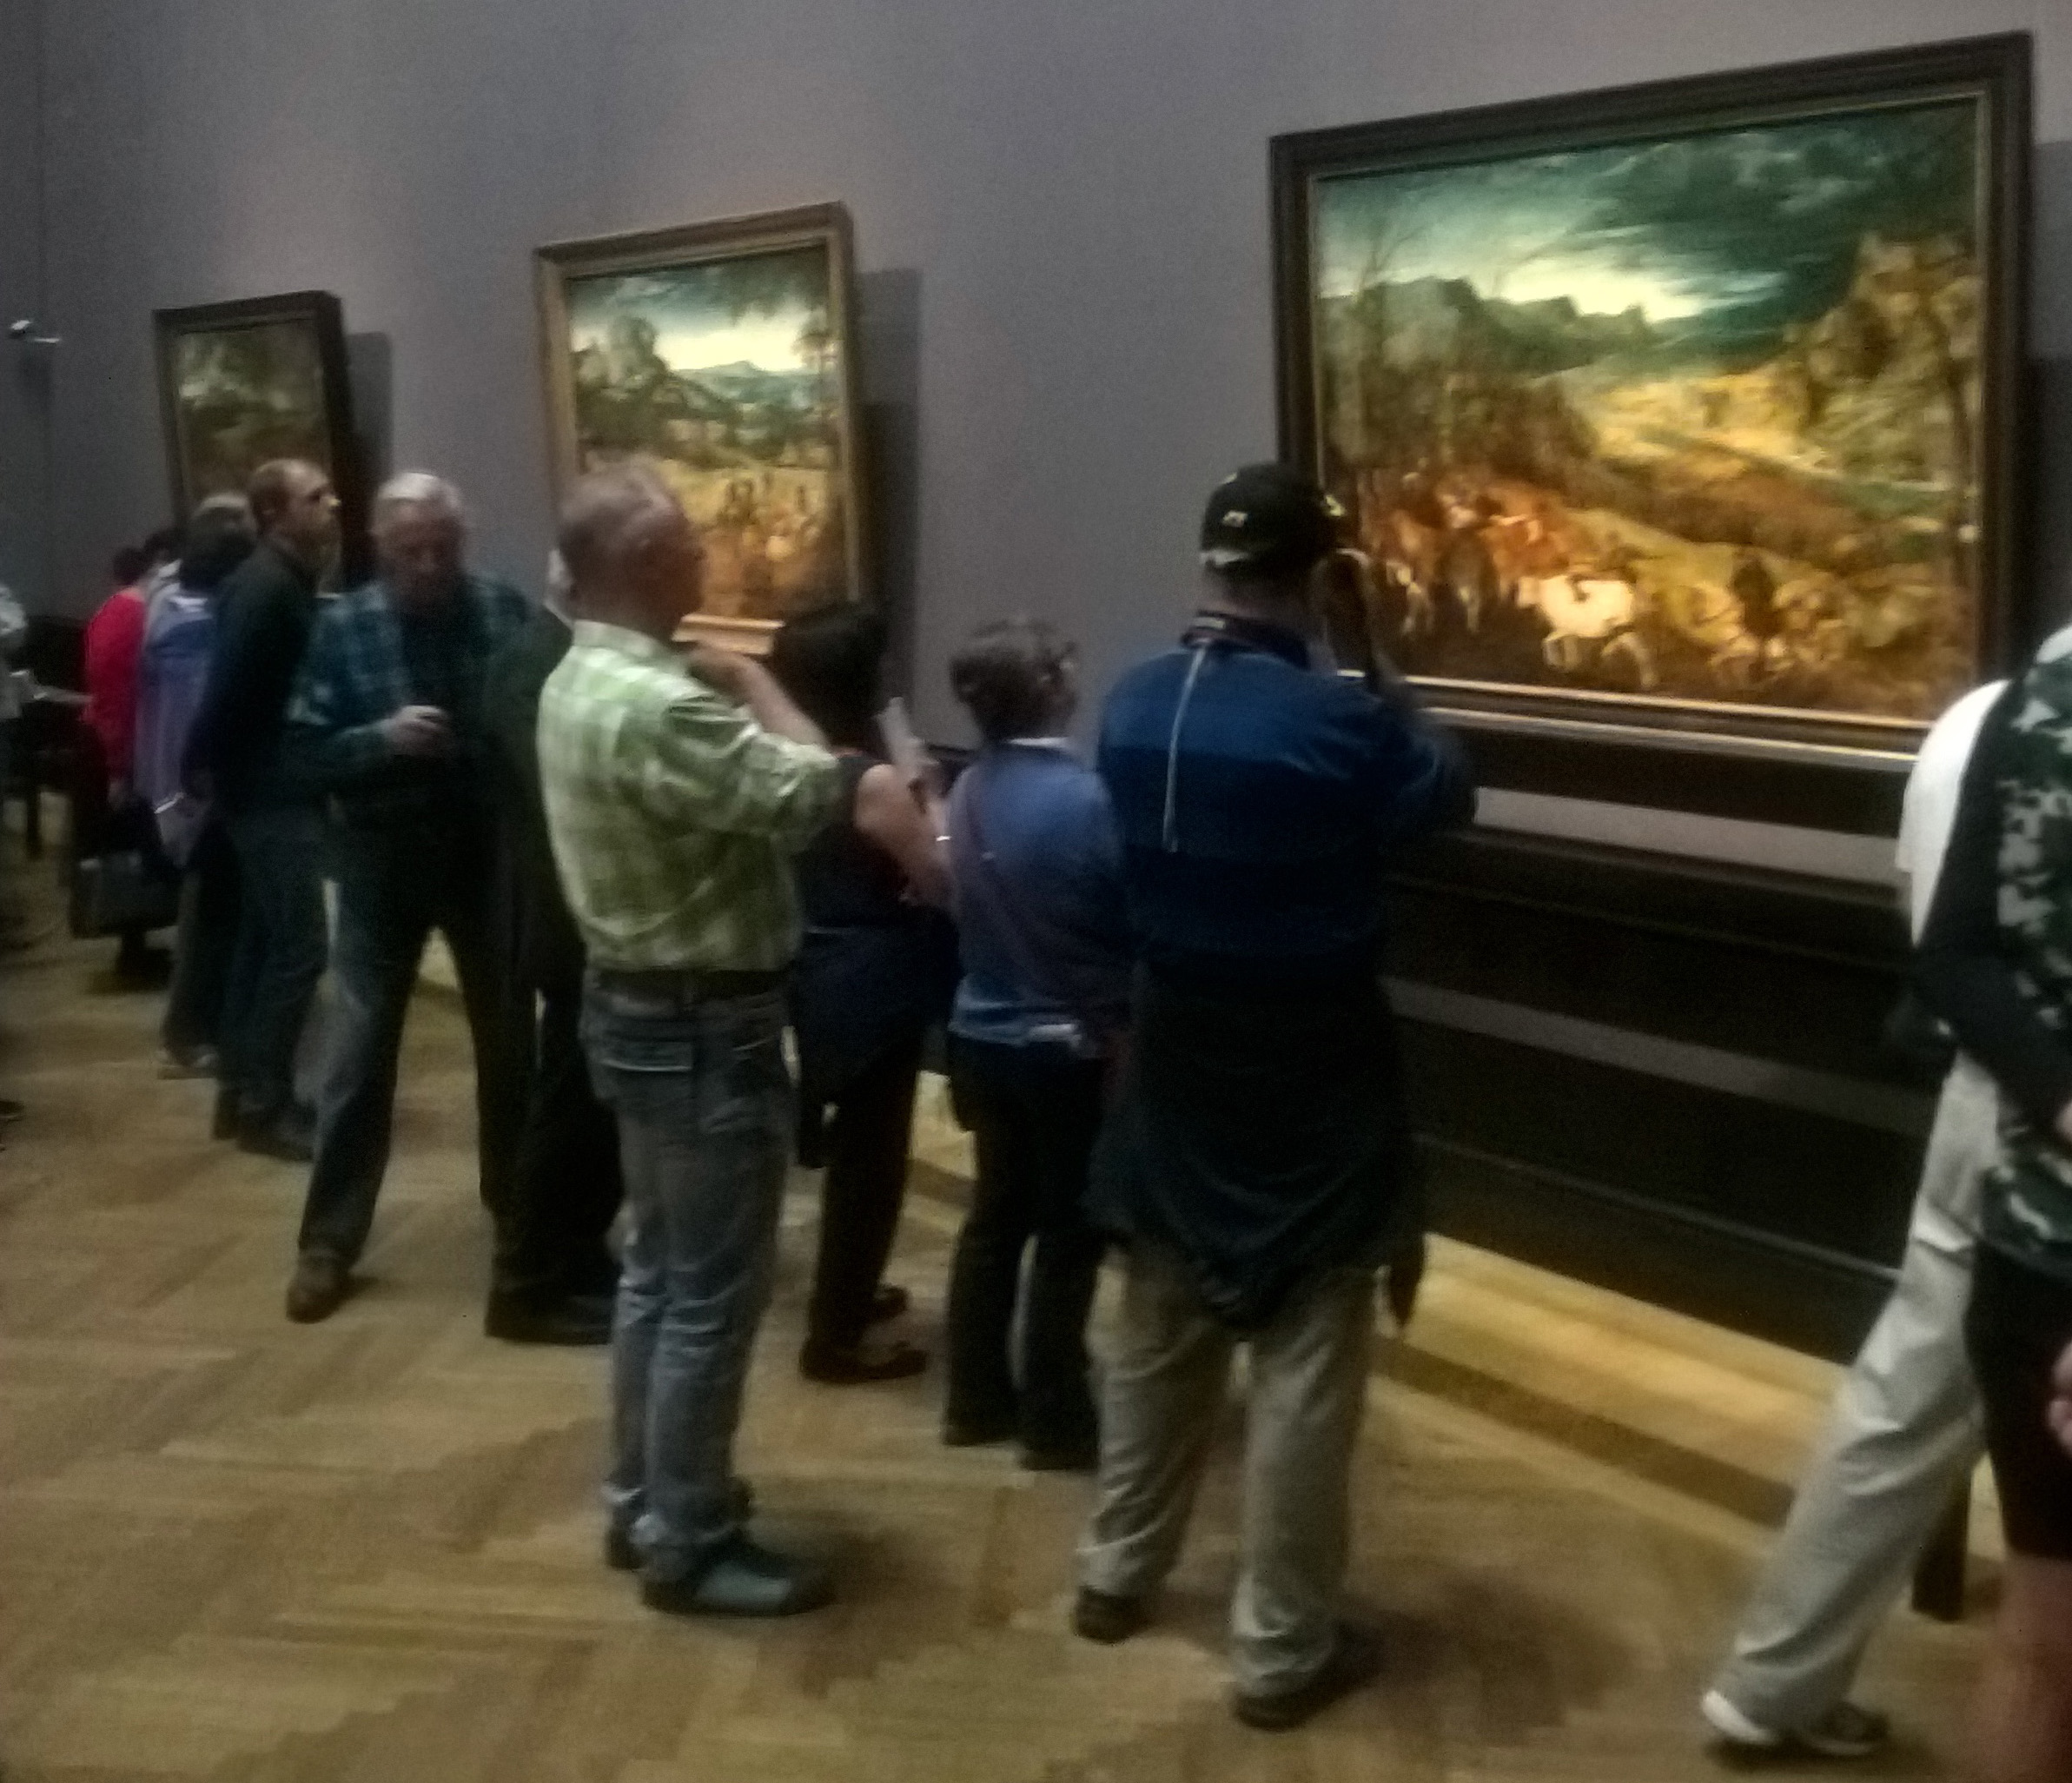 Gazing at Bruegel